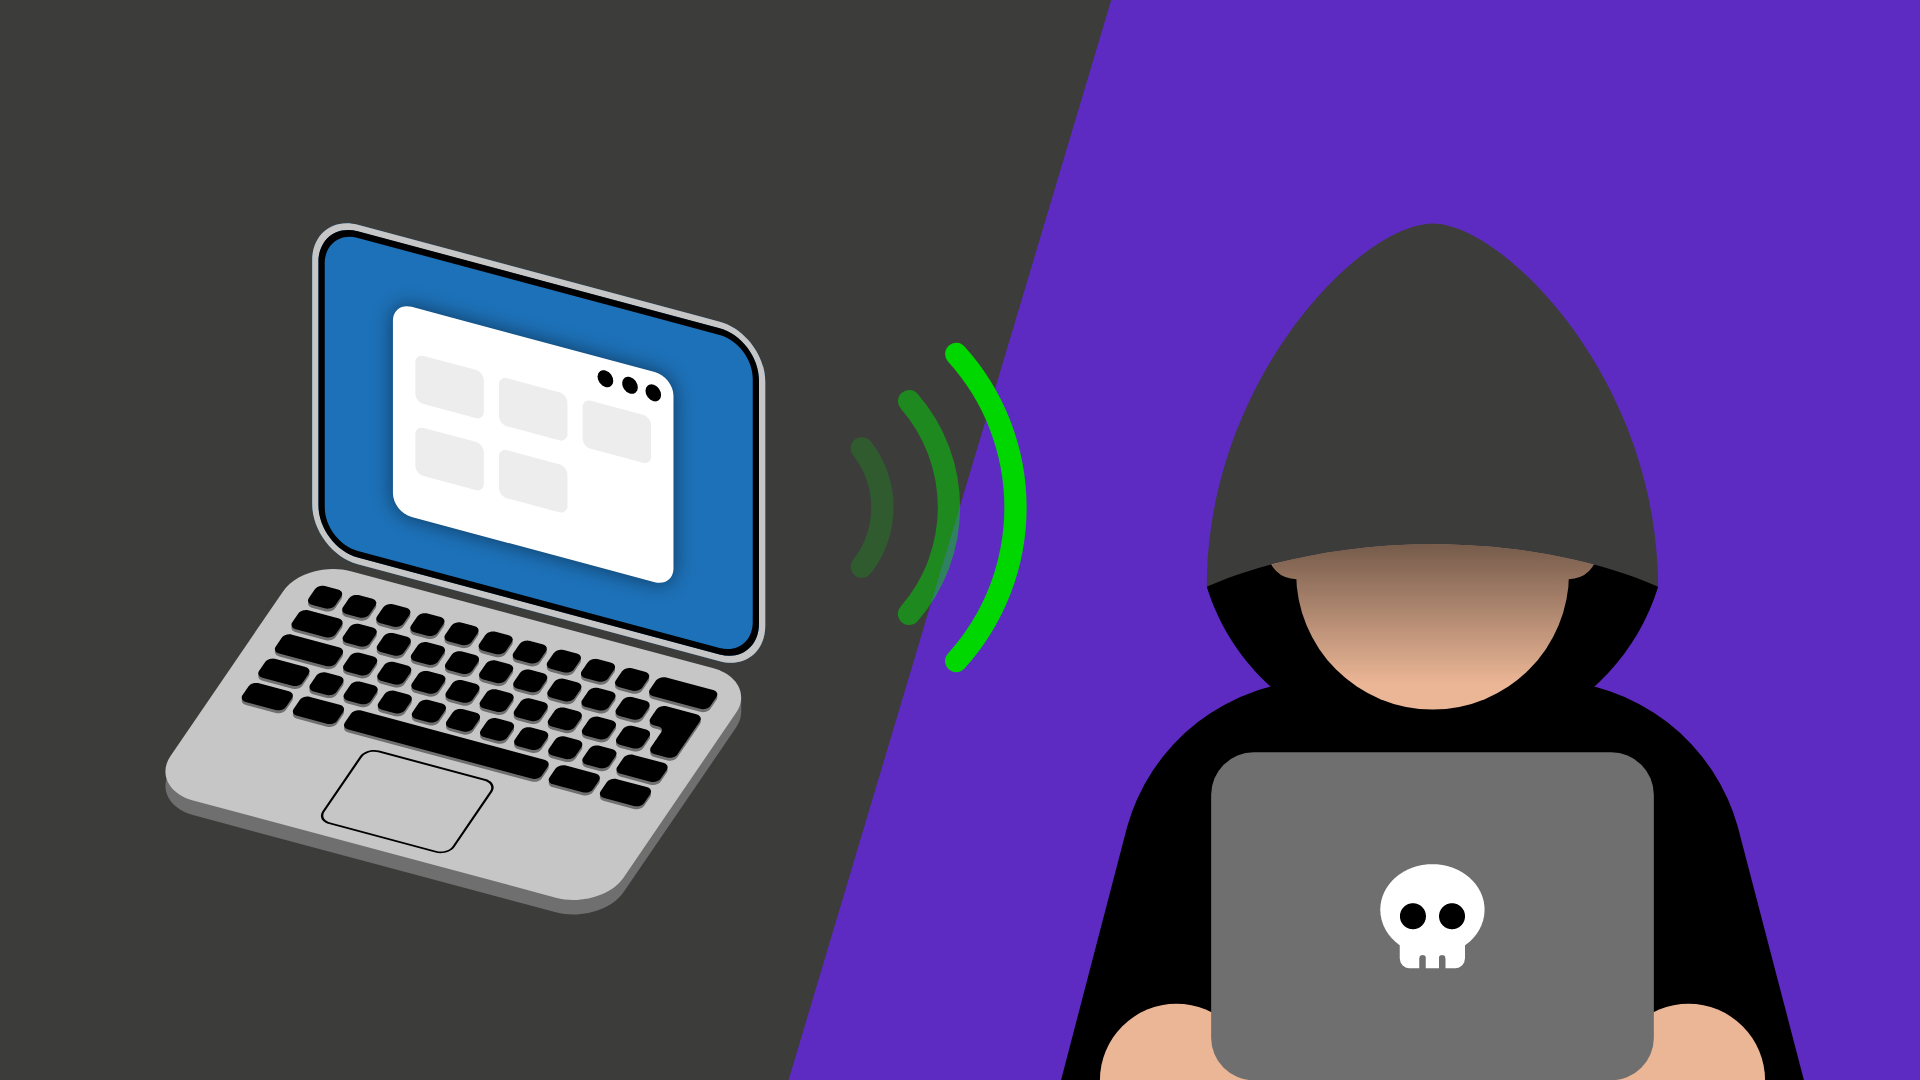 In der linken Bildhälfte ist ein Laptop zu sehen. Rechts ein Mann mit Kapuze der vor einem Laptop sitzt. Zwischen beiden sind Funkwellen abgebildet.